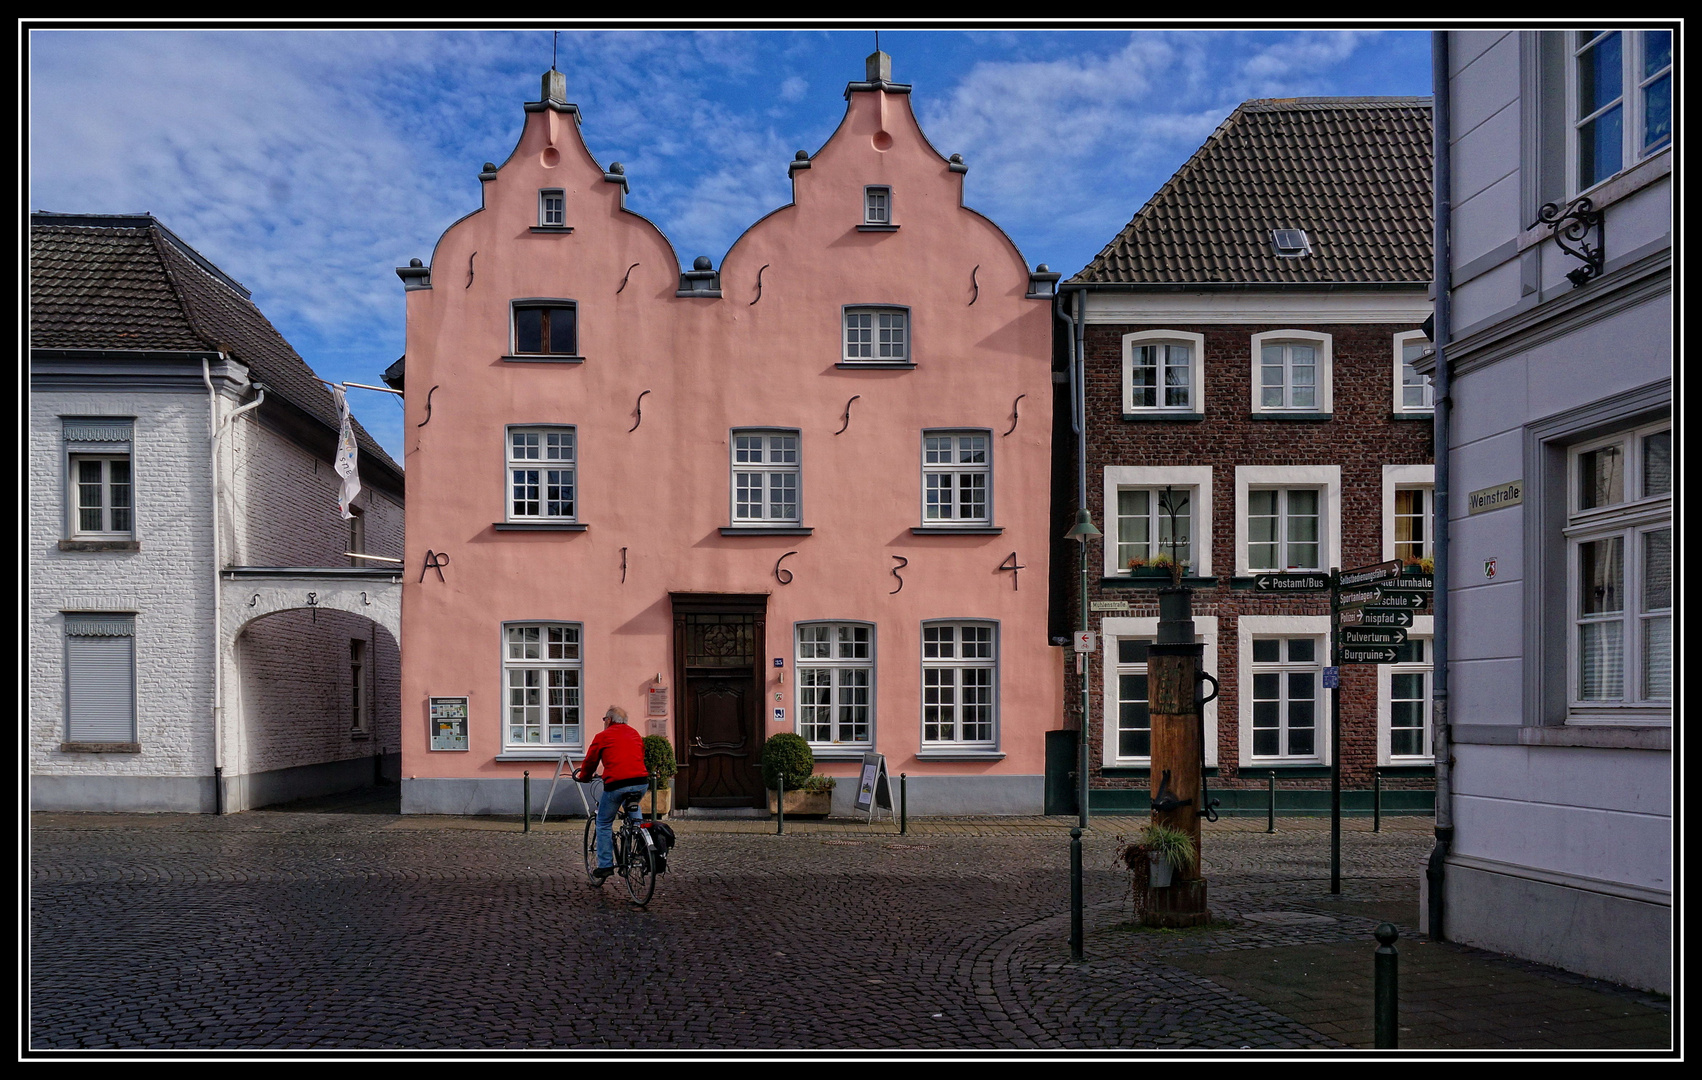 Wachtendonk - In der Historischen Altstadt